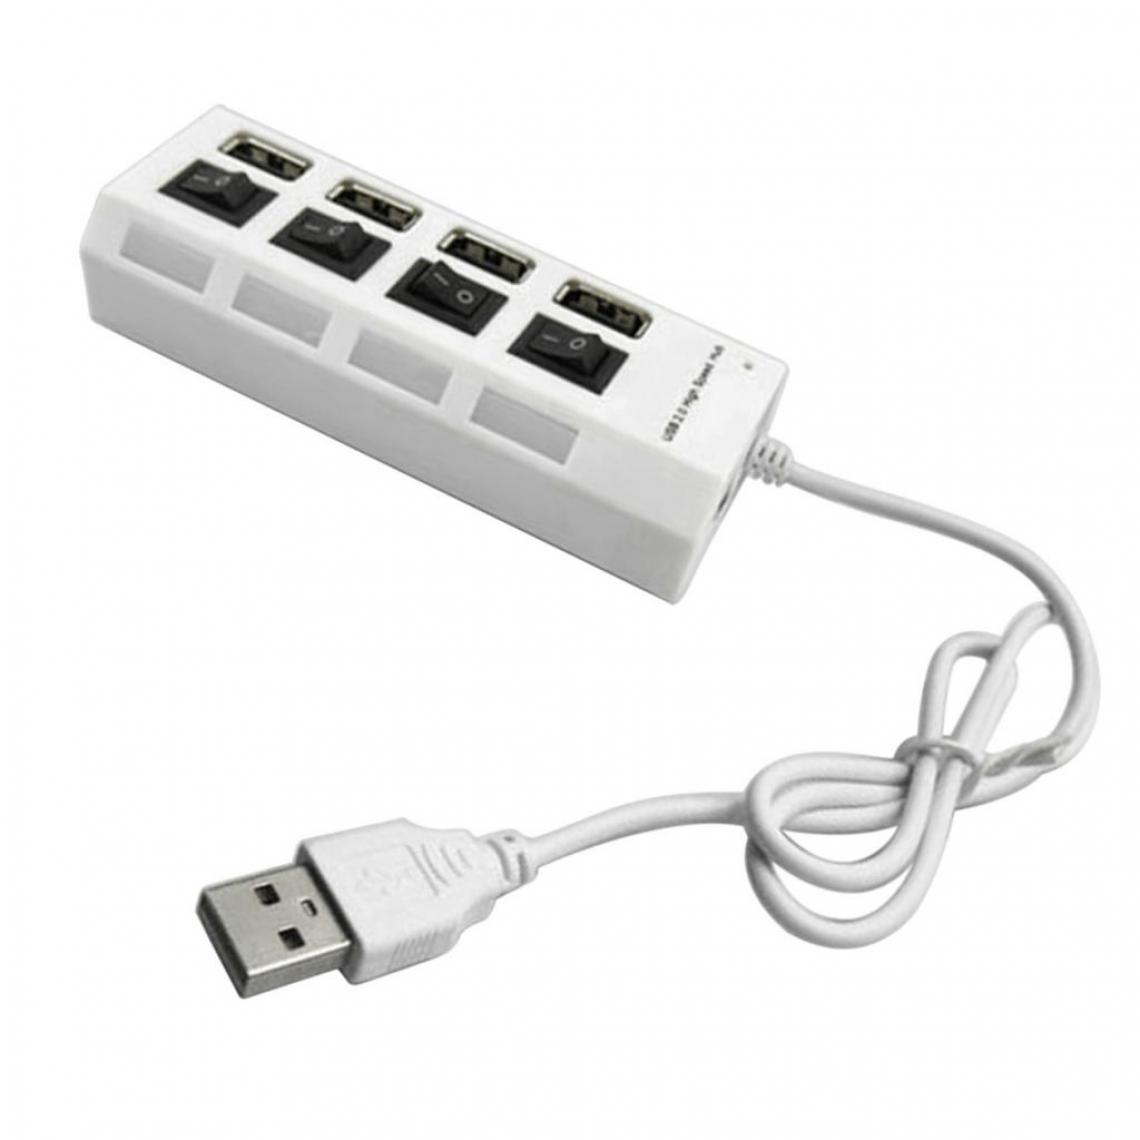 marque generique - 4 Ports USB 2.0 Multi Chargeur Hub + Adaptateur Haute Vitesse Interrupteur Marche / Arrêt PC Noir - Hub